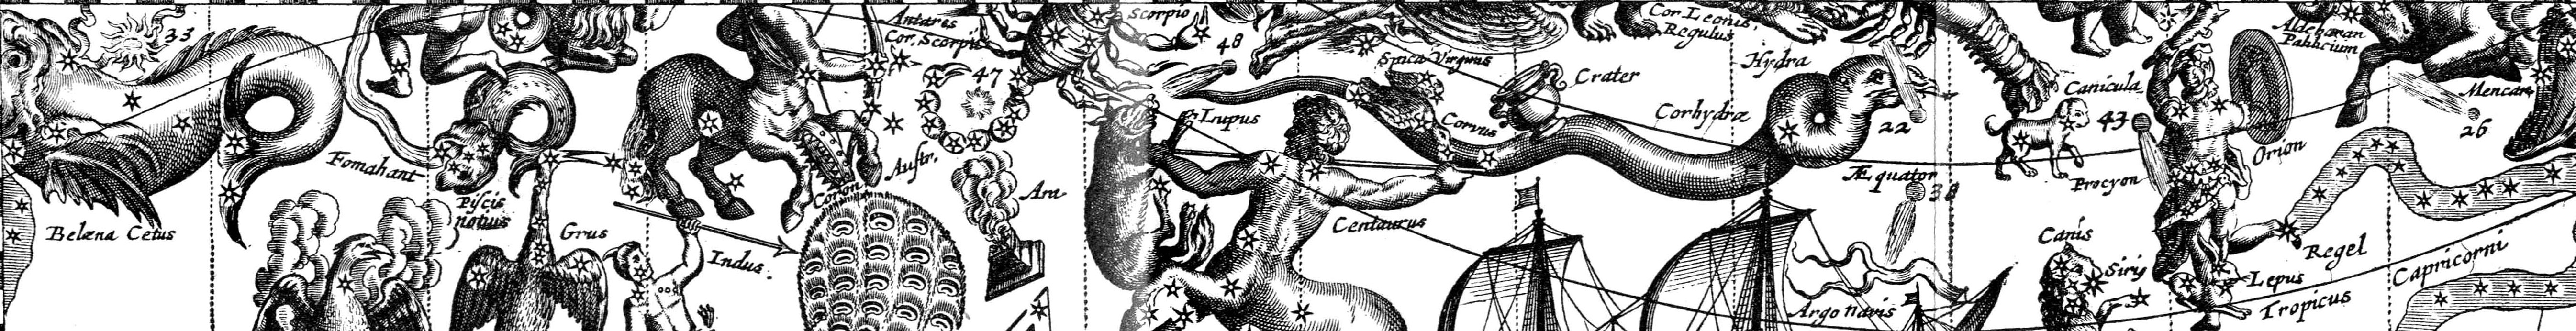 Хорарная астрология в современных реалиях